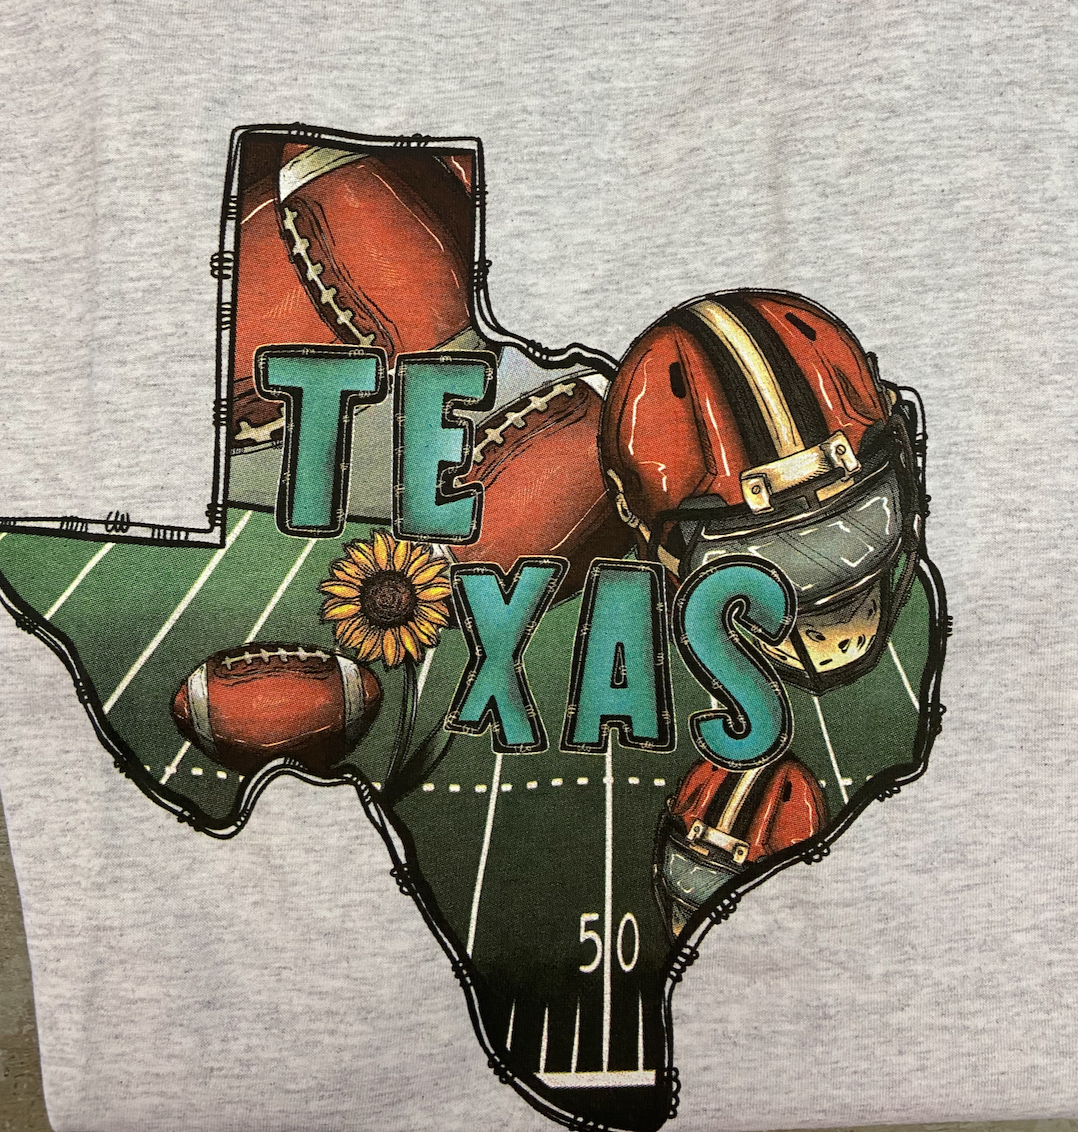 HH Texas Tshirts